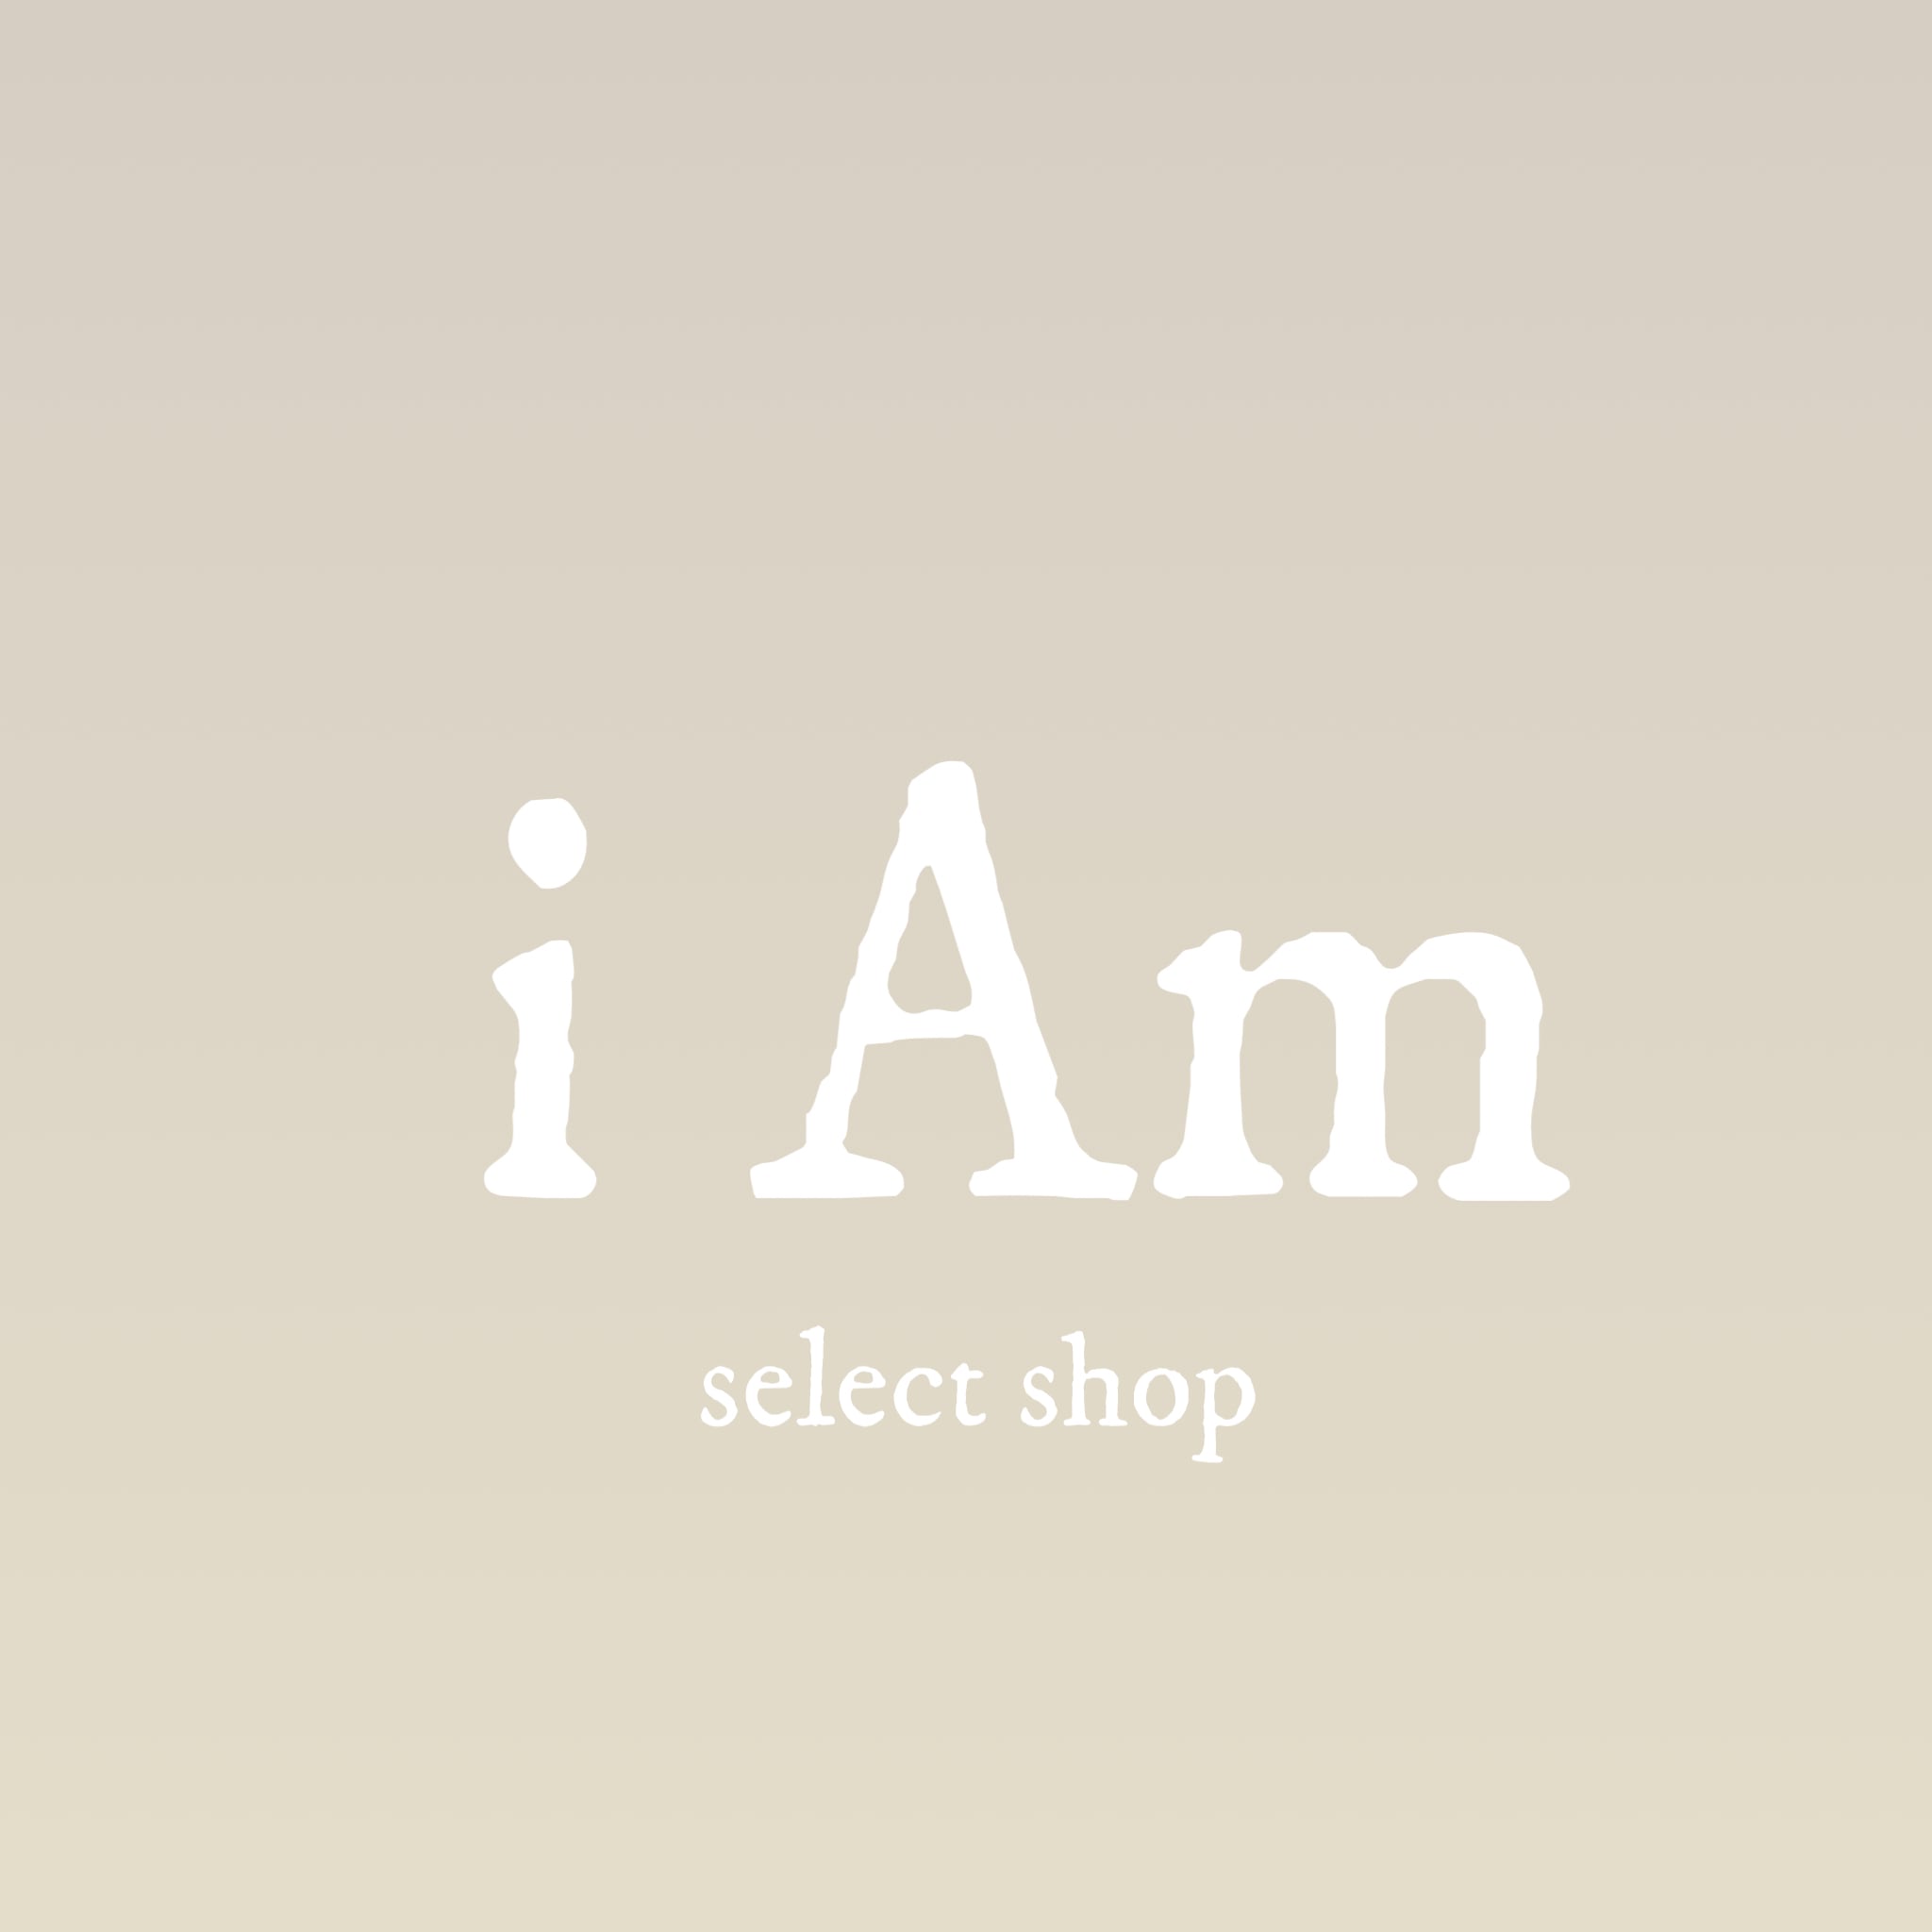 i Am select shop